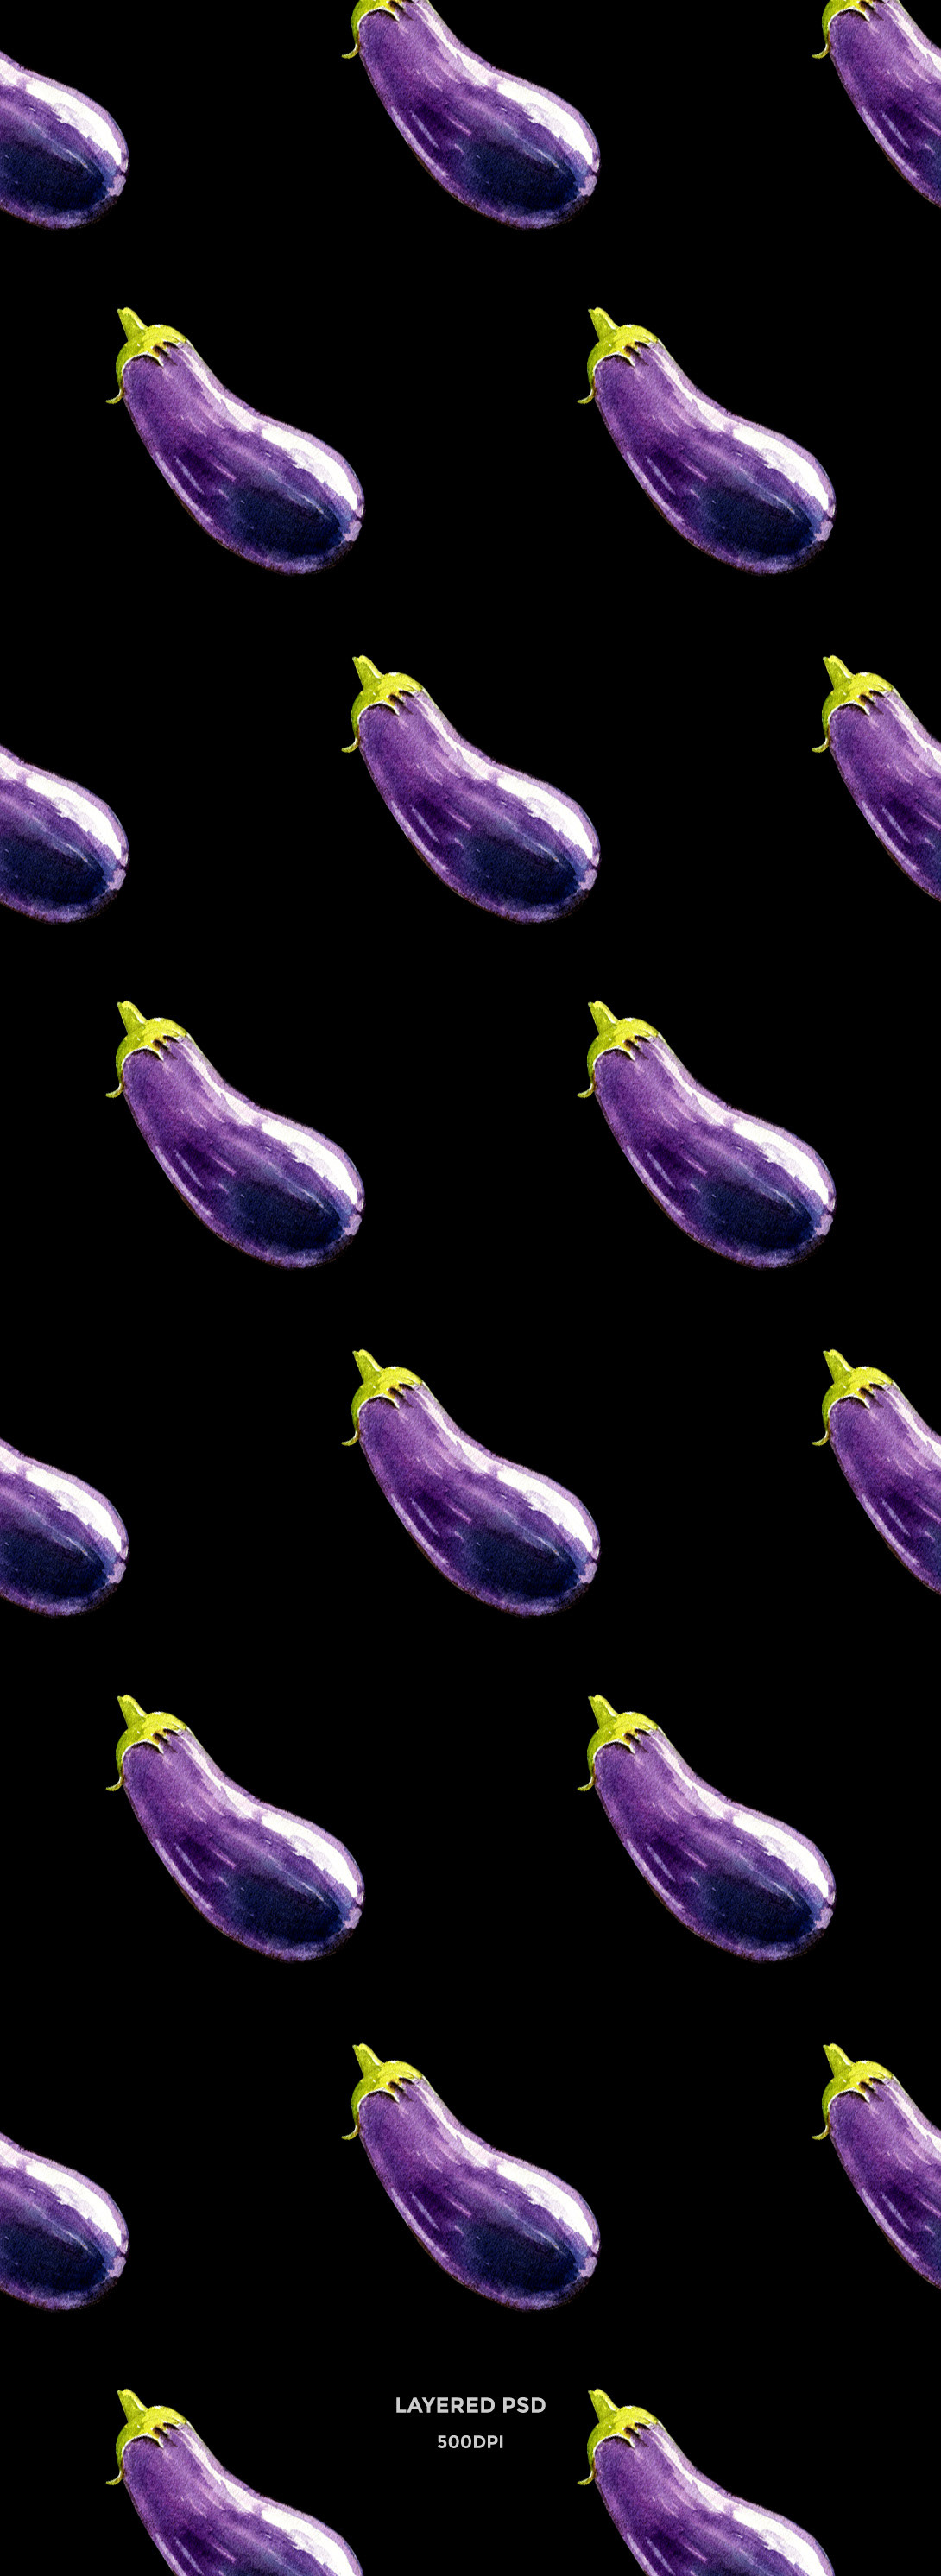 eggplant eggplant watercolor eggplant illustration eggplant isolated eggplant psd vegetable watercolor food watercolor food illustration vegetable illustration